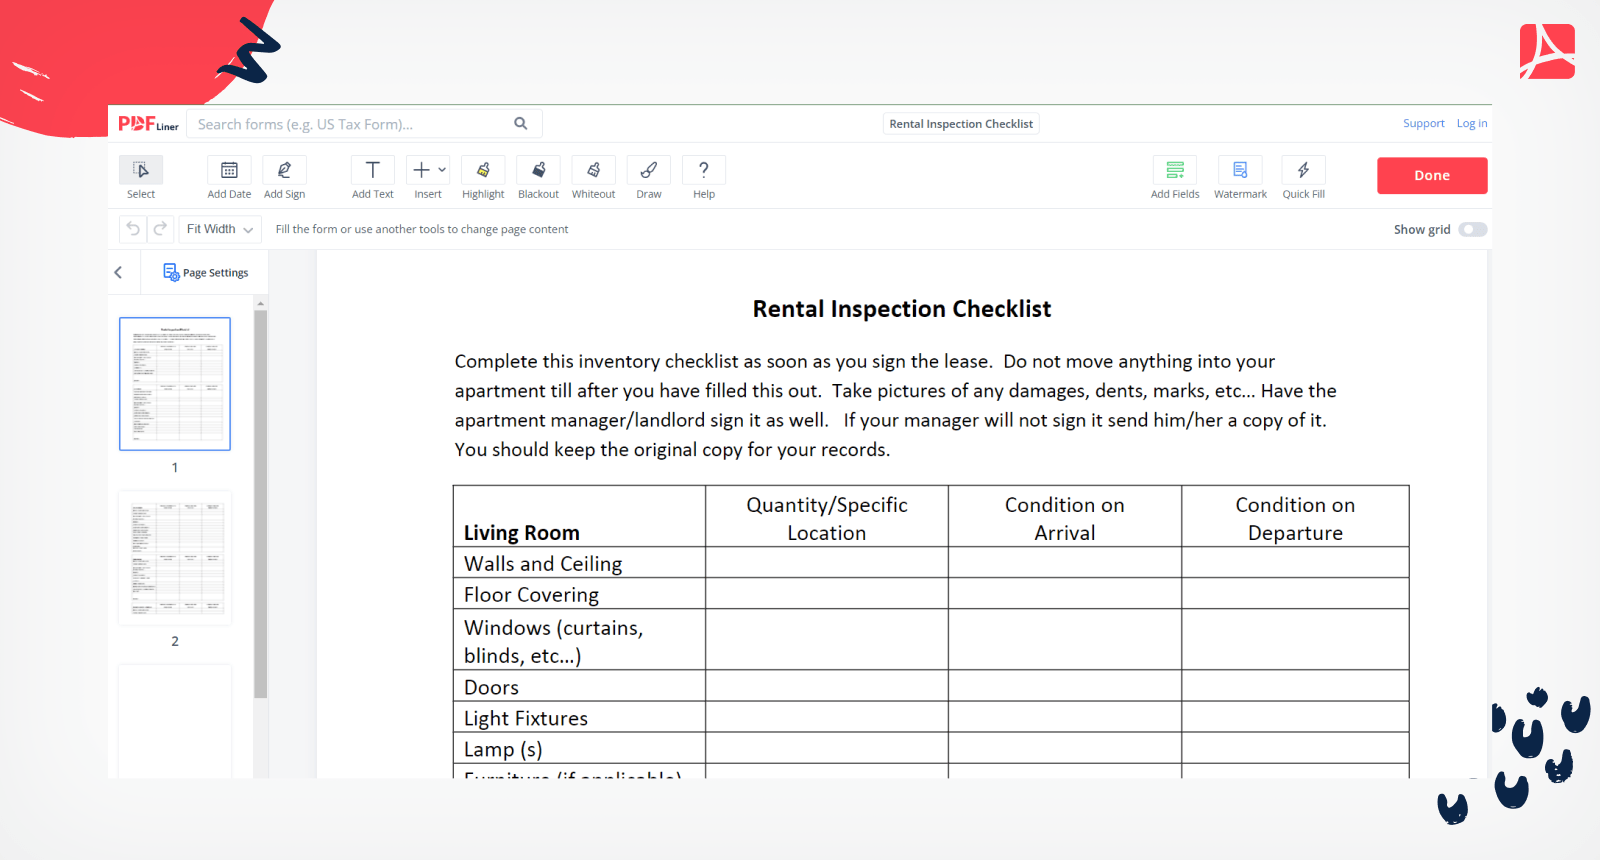 Rental Inspection Checklist on PDFLiner